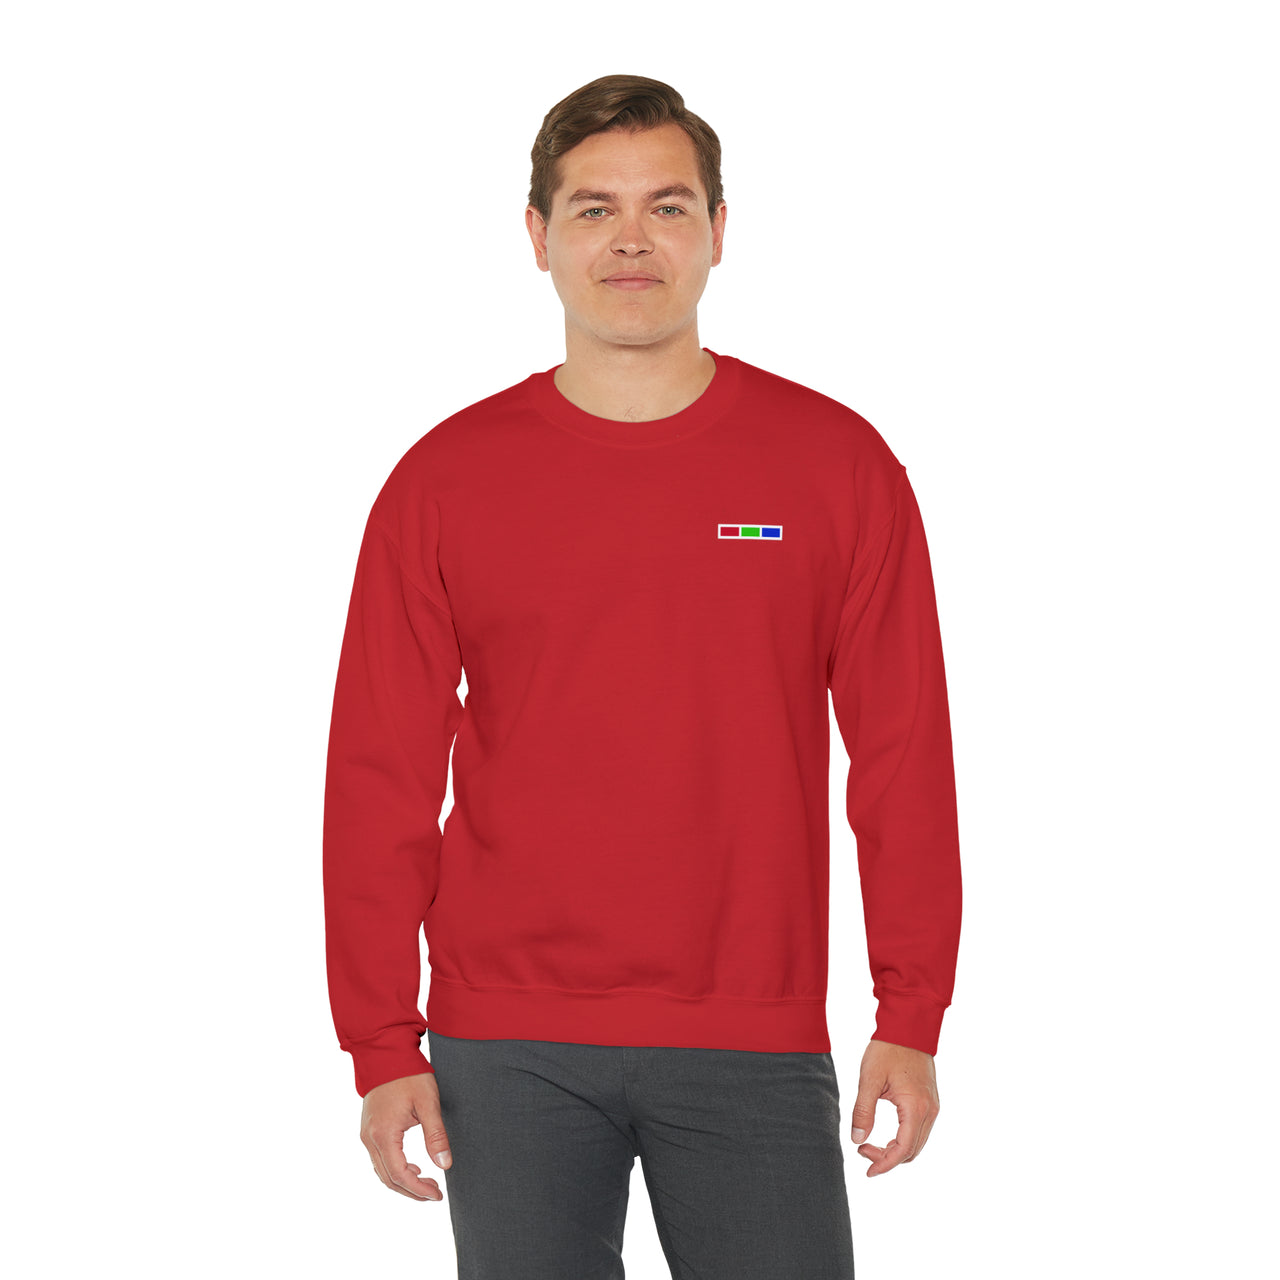 WarmHug Crewneck Sweatshirt